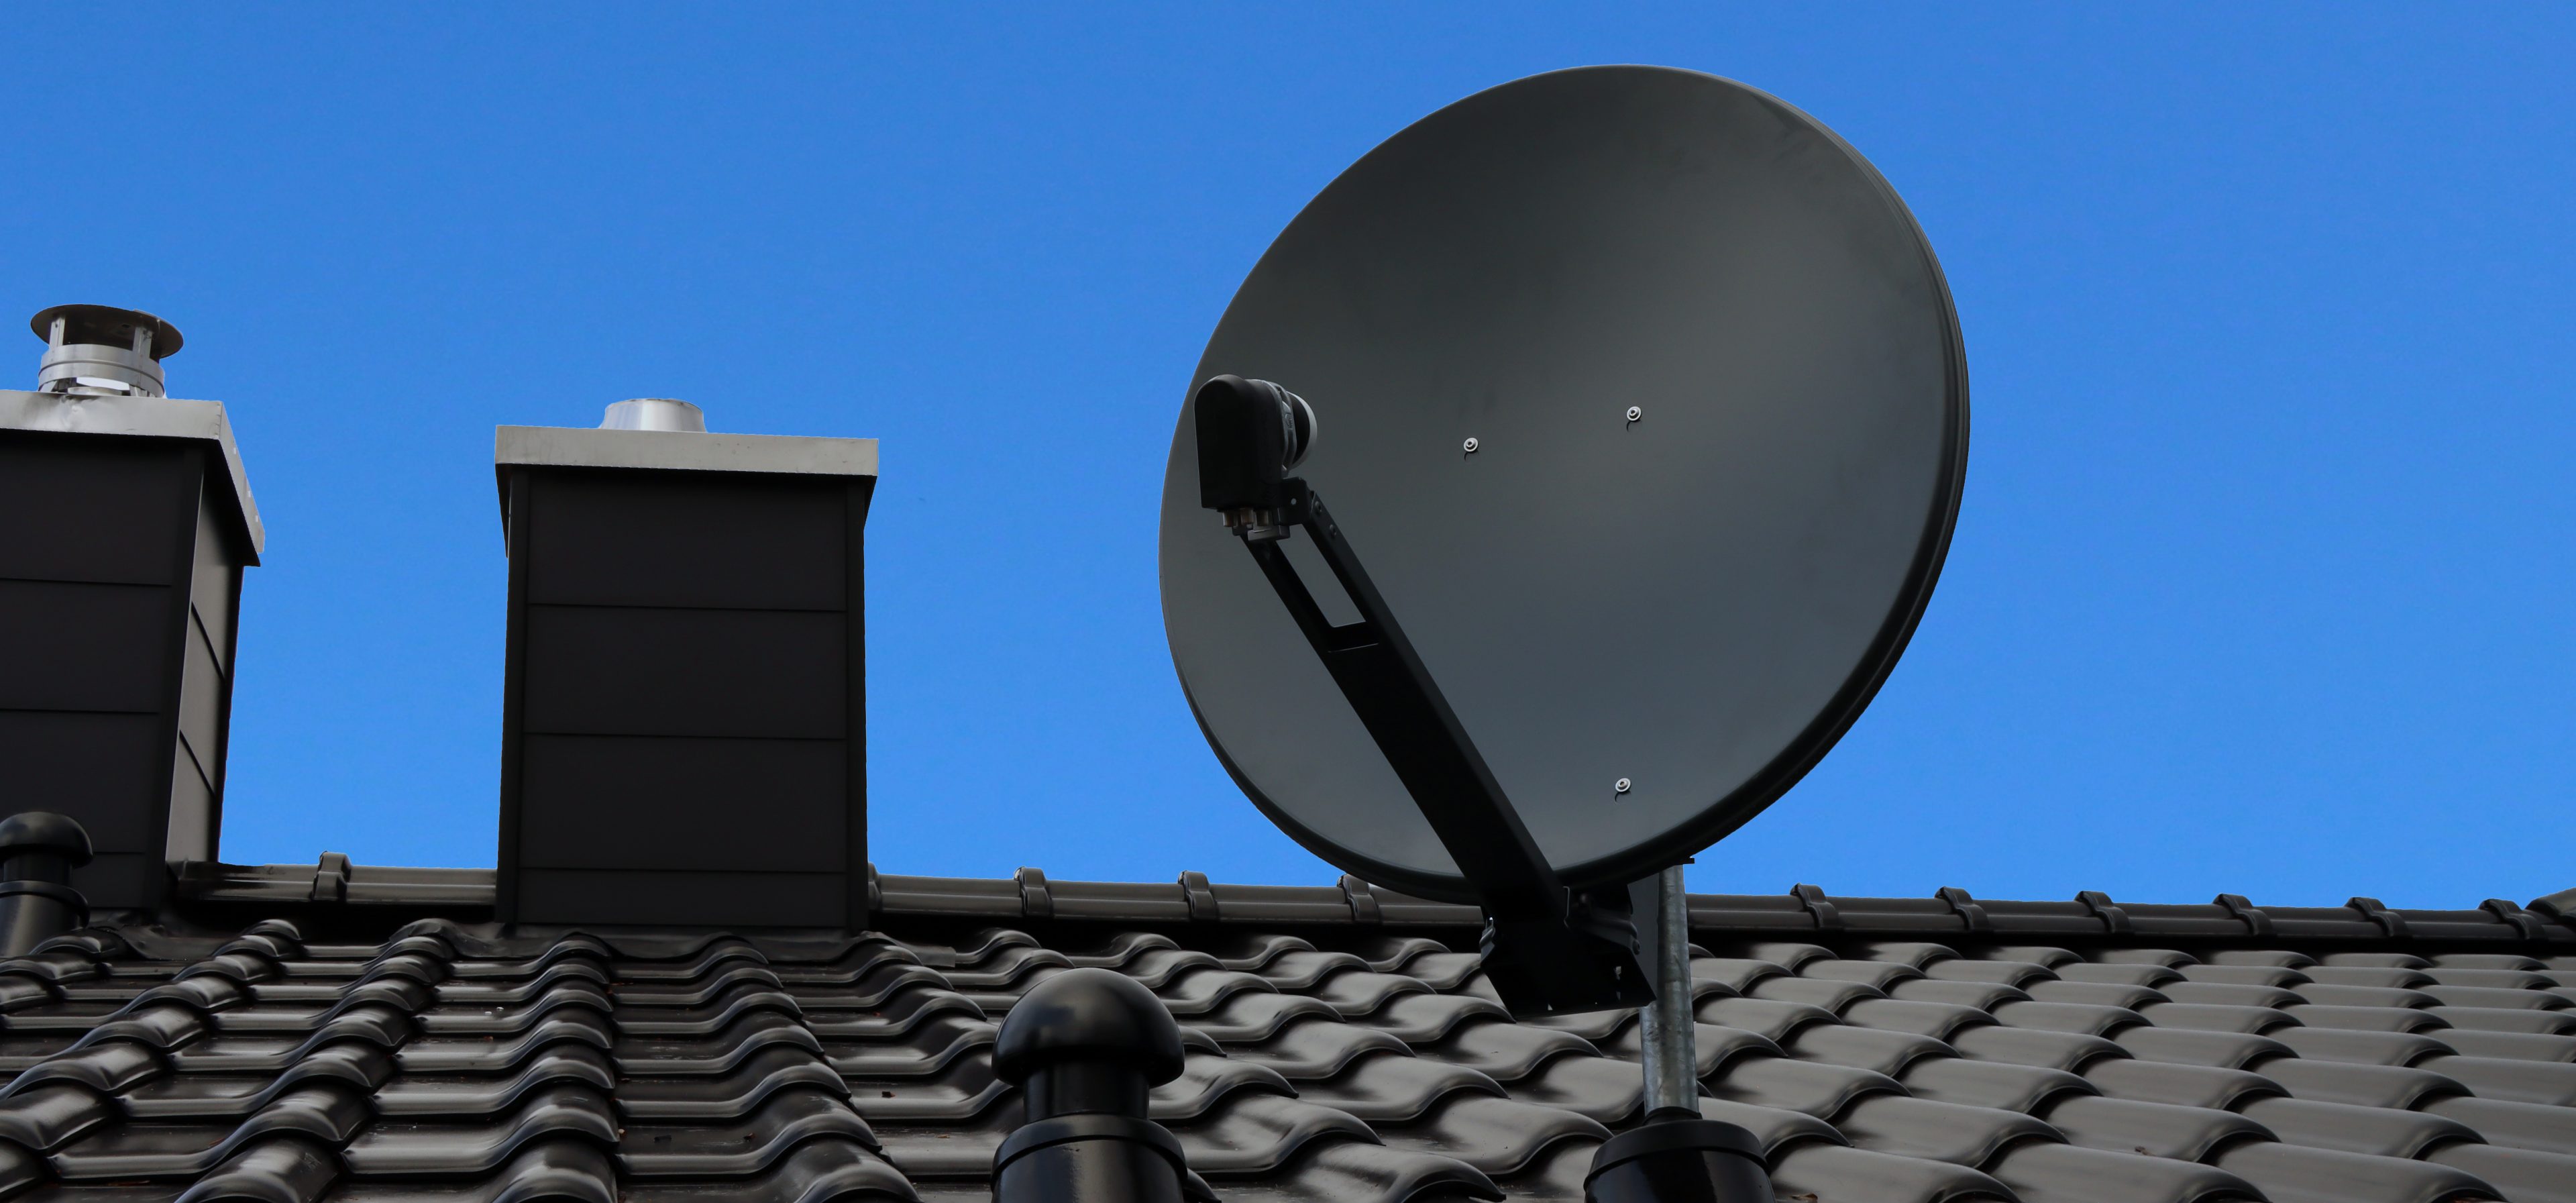 Satellitenanlage auf Dach mit blauem Himmel